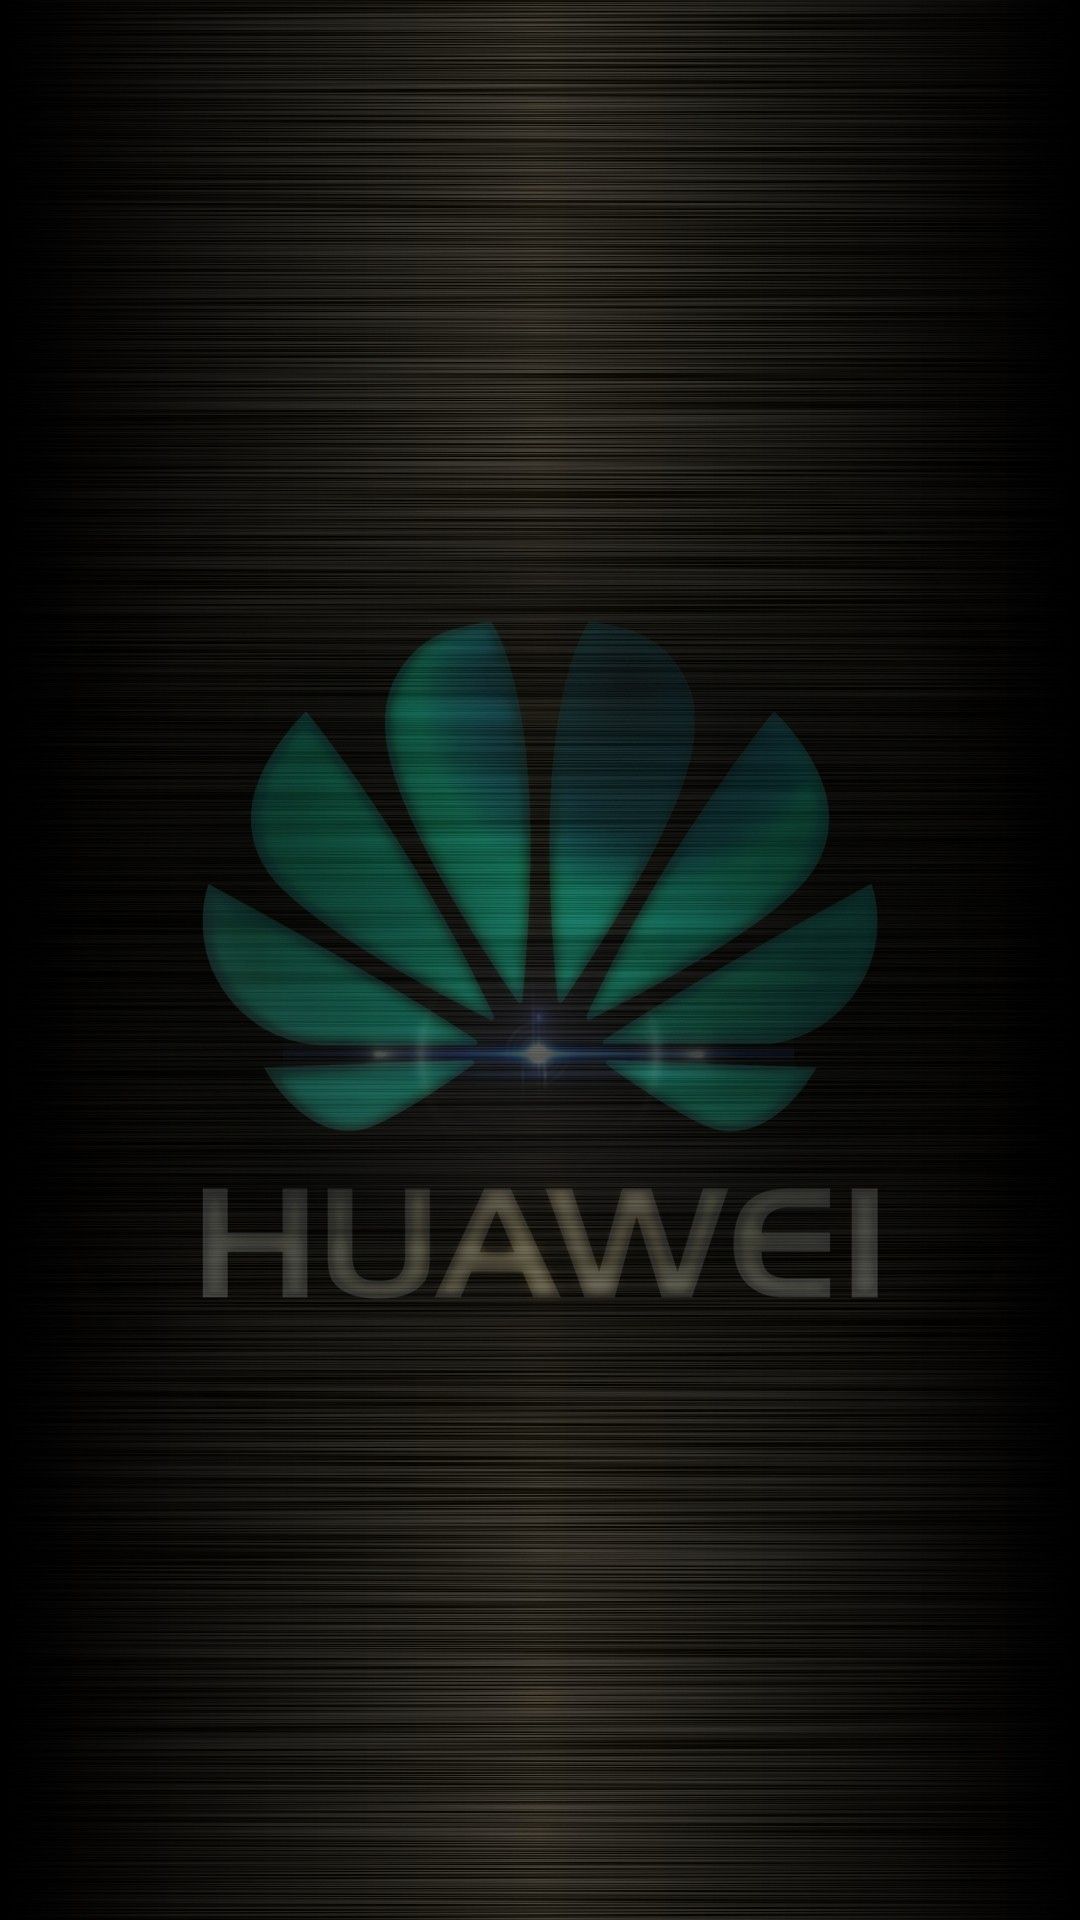 Huawei Hd Wallpapers